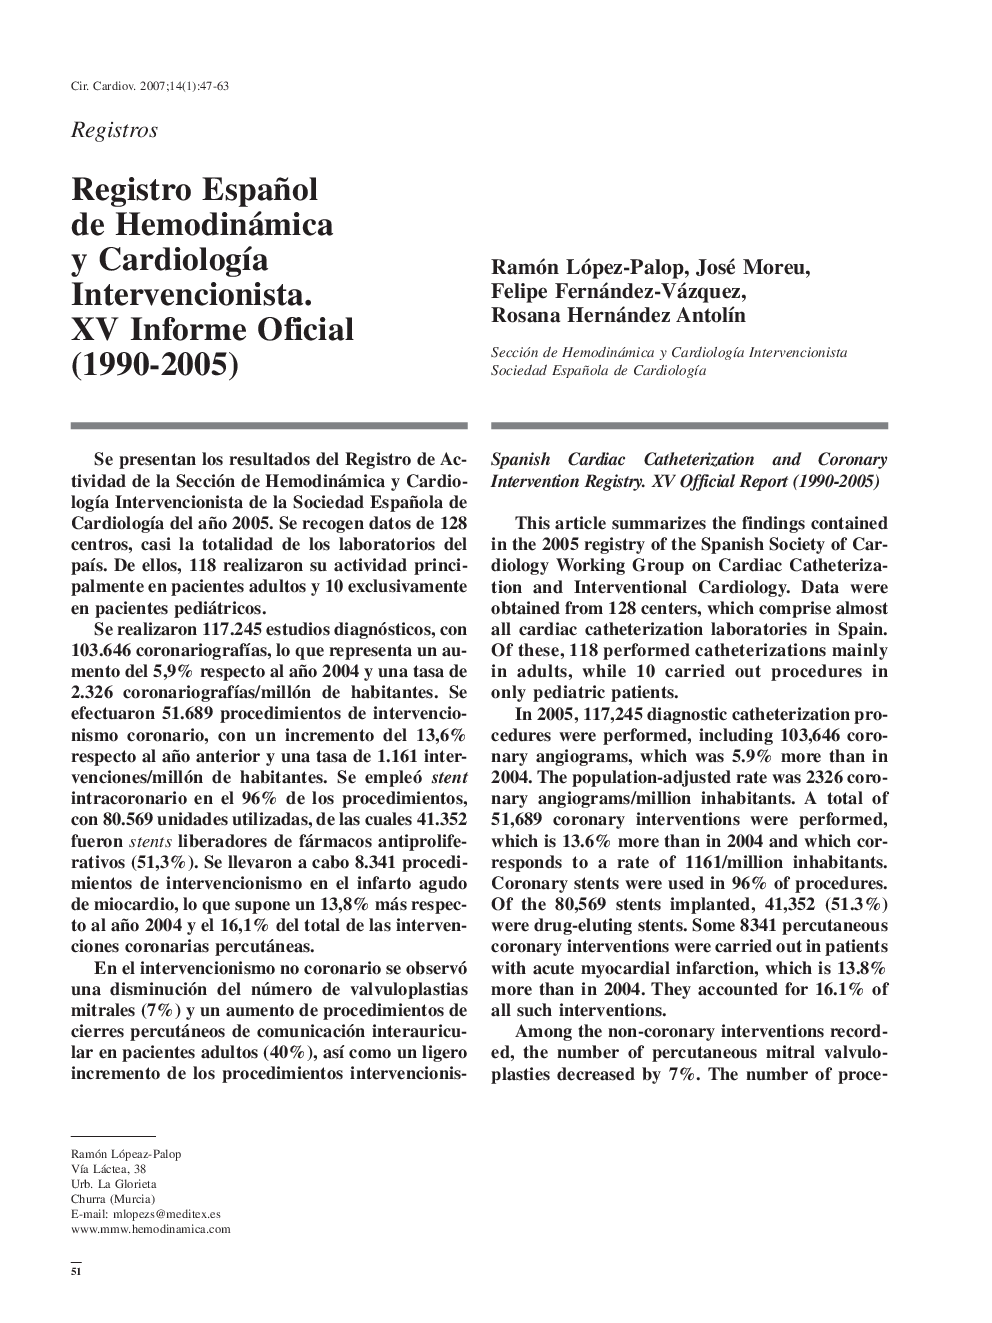 Registro Español de Hemodinámica y Cardiología Intervencionista. XV Informe Oficial (1990-2005)